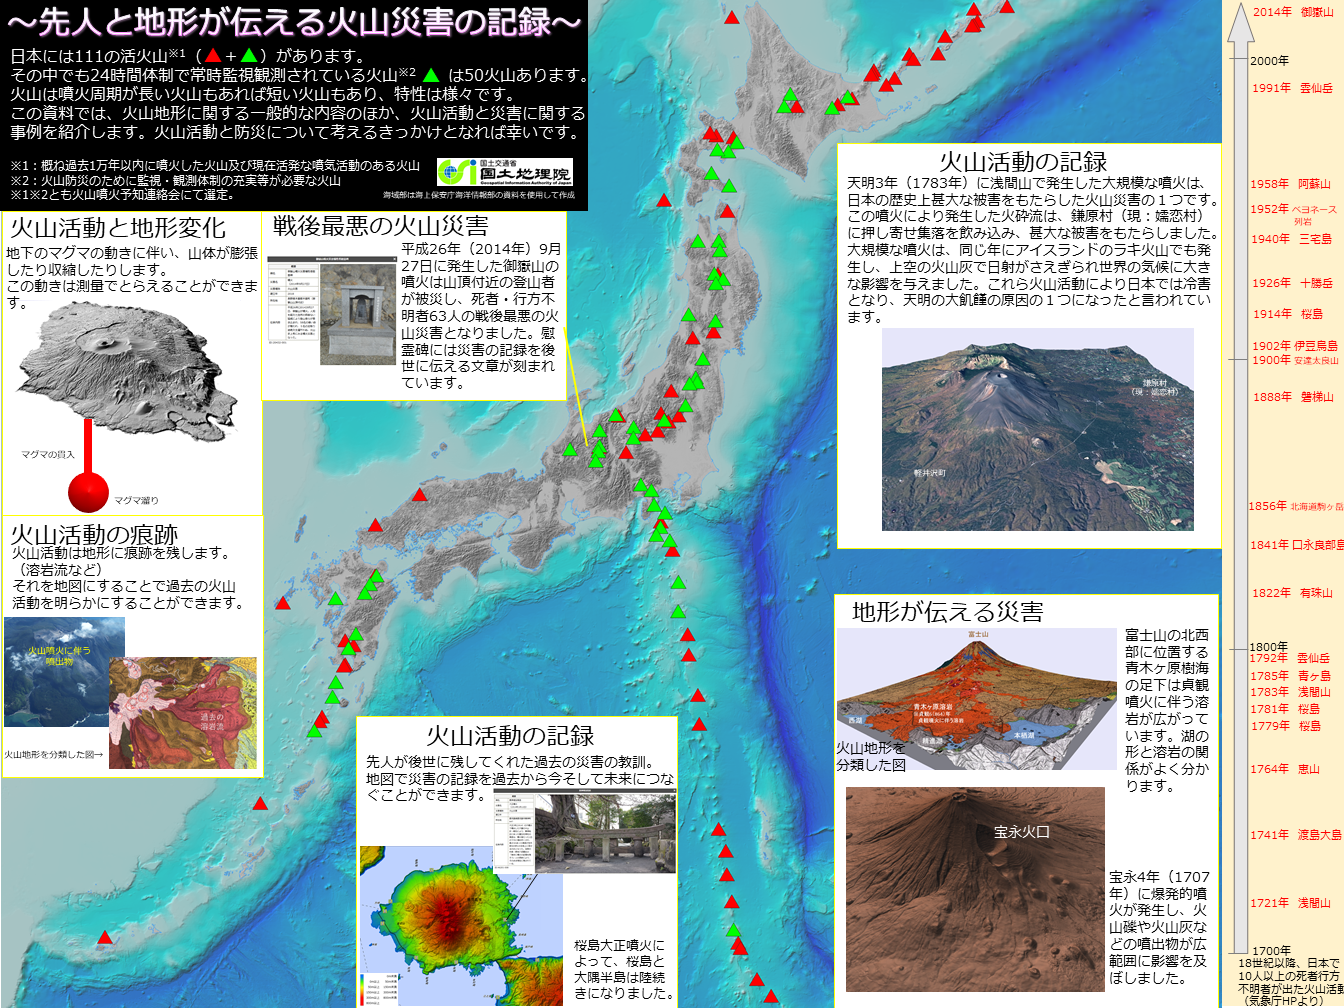 自然災害伝承碑と地形を活用して火山災害の記録をたどってみましょう